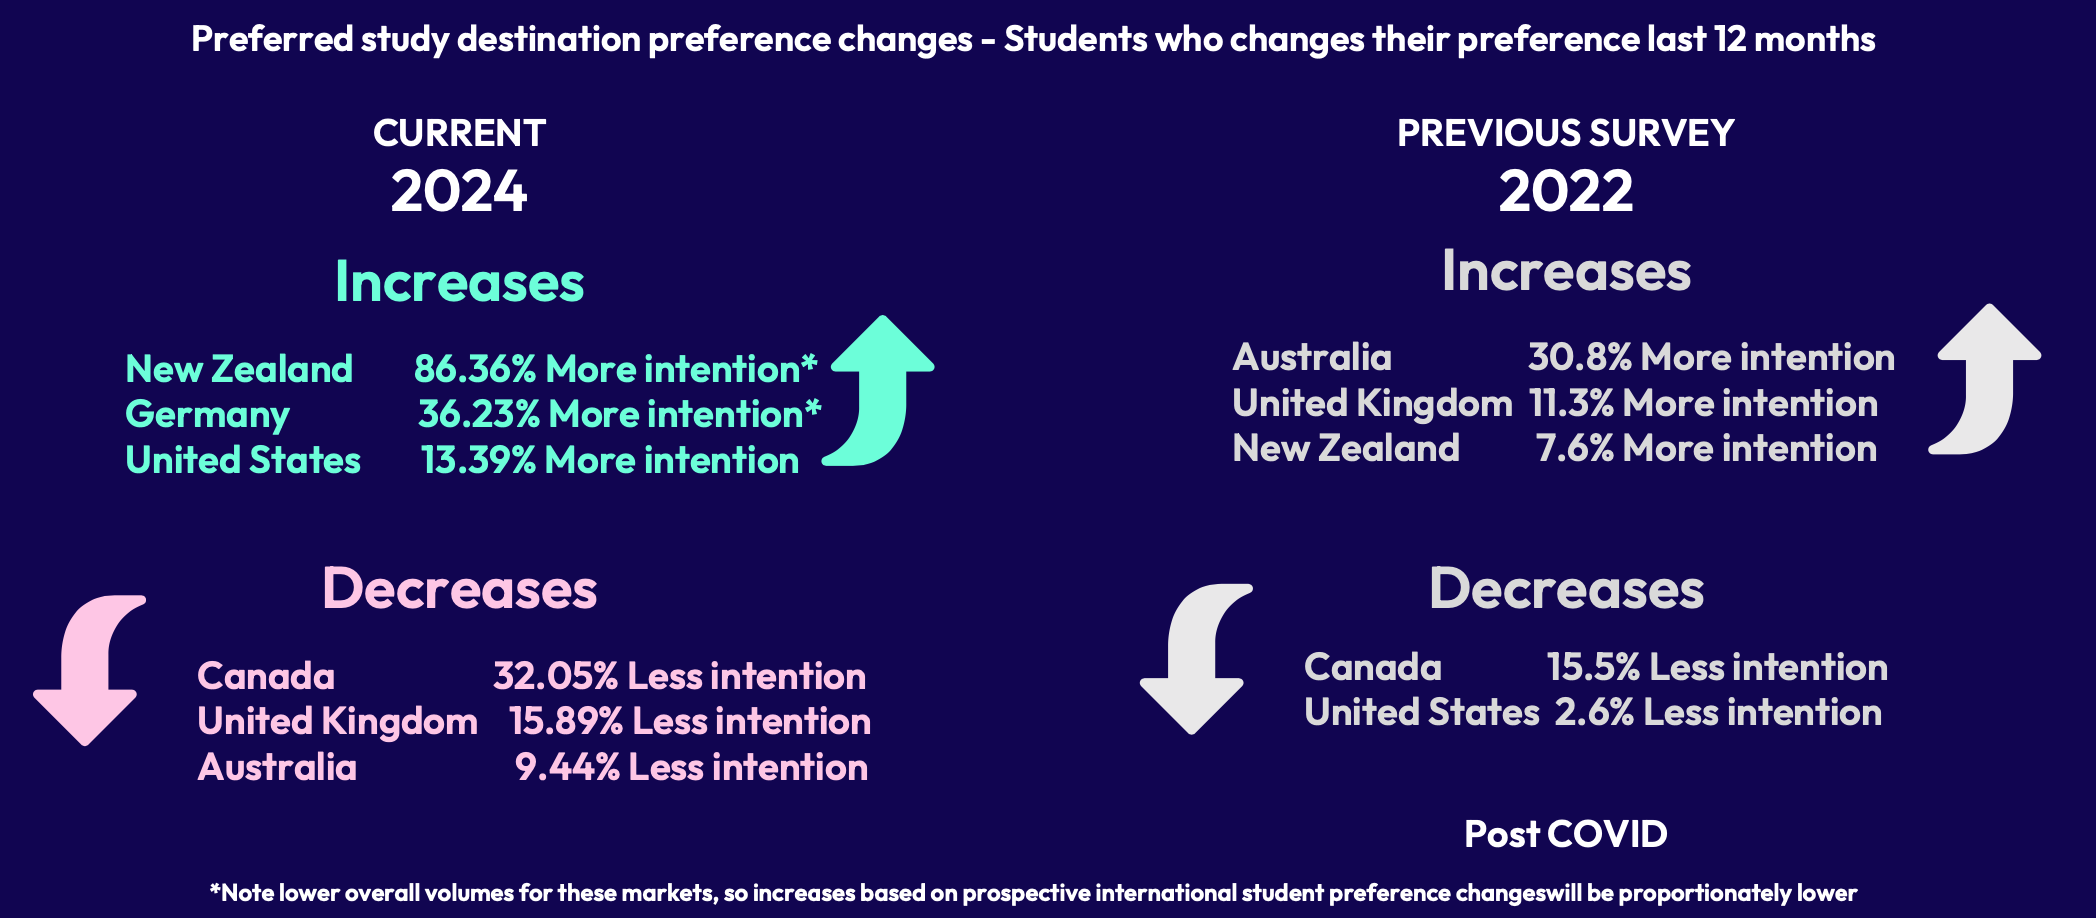 New Zealand, Đức và Mỹ là những quốc gia ngày càng nhận về nhiều sự quan tâm nhờ chính sách giáo dục quốc tế ổn định